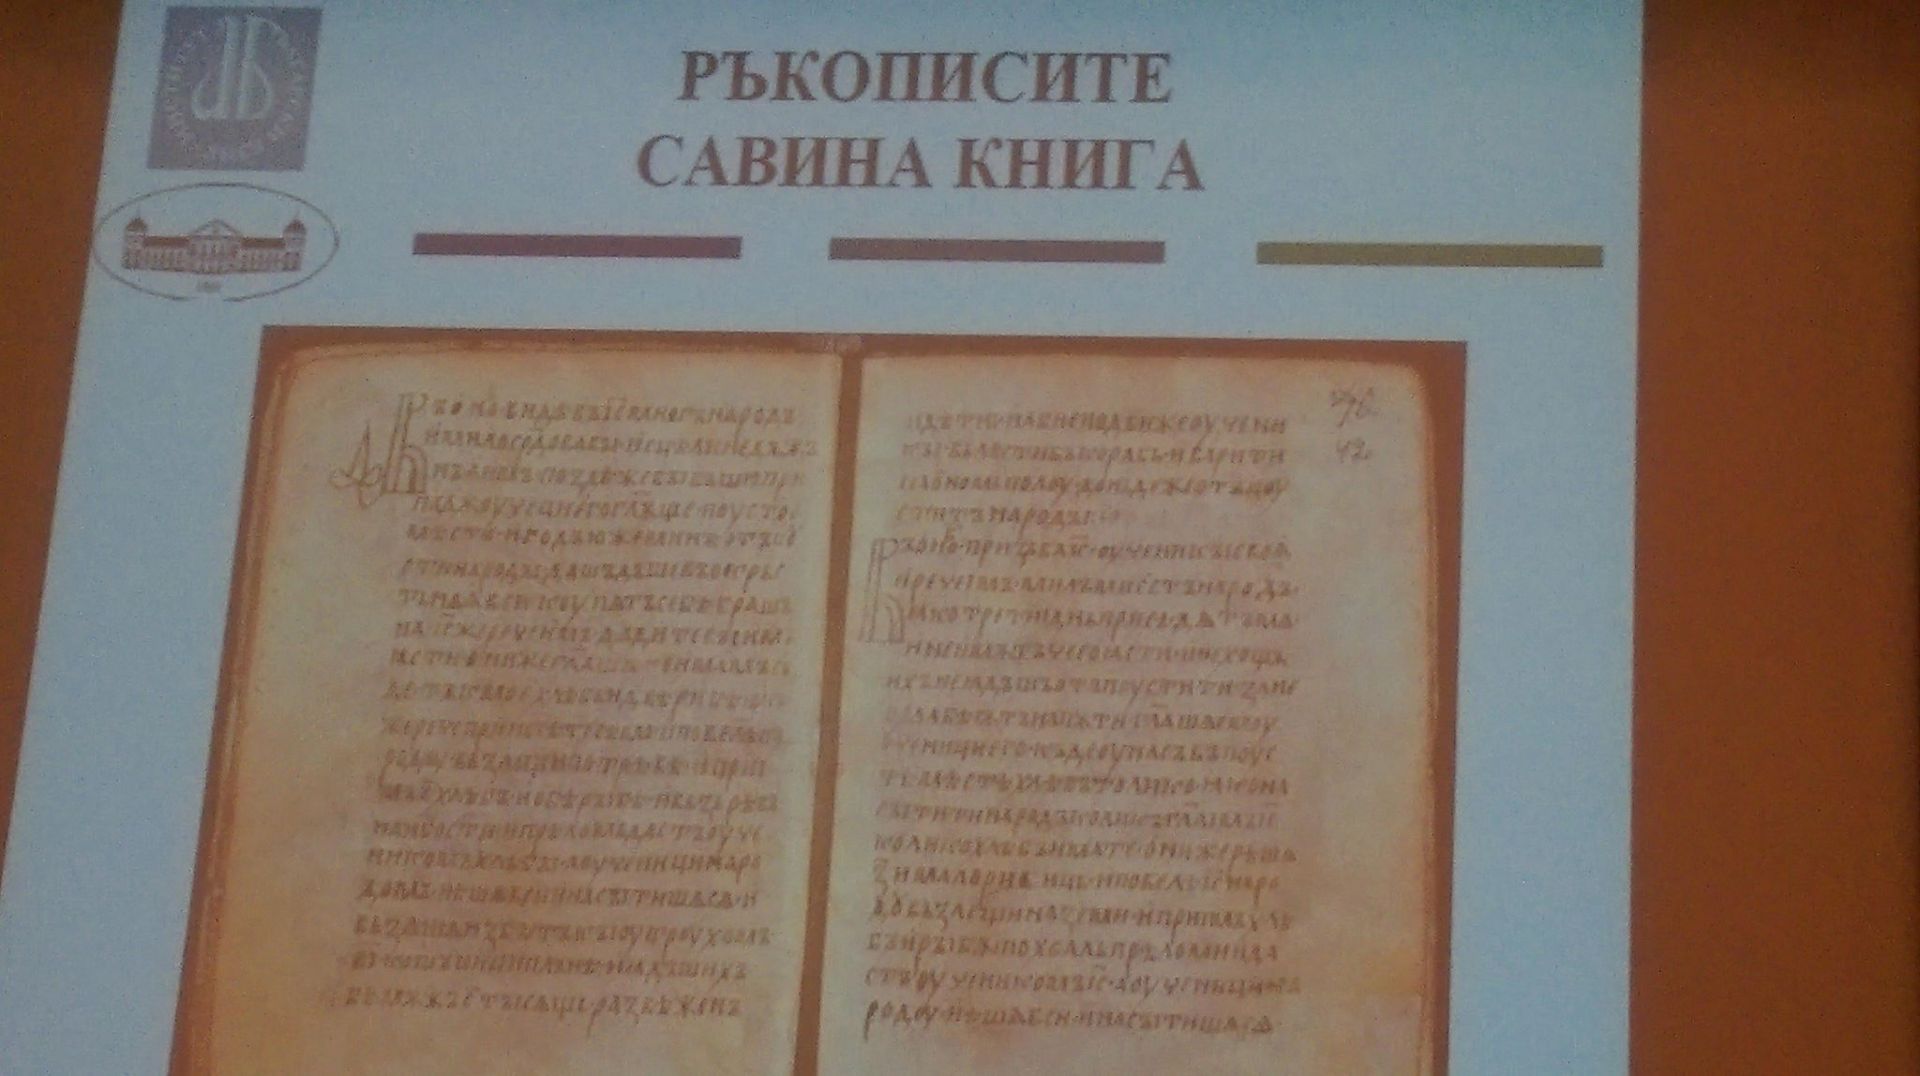 Савина книга е кирилски ръкопис от 10 или 11 век, писан в Източна България